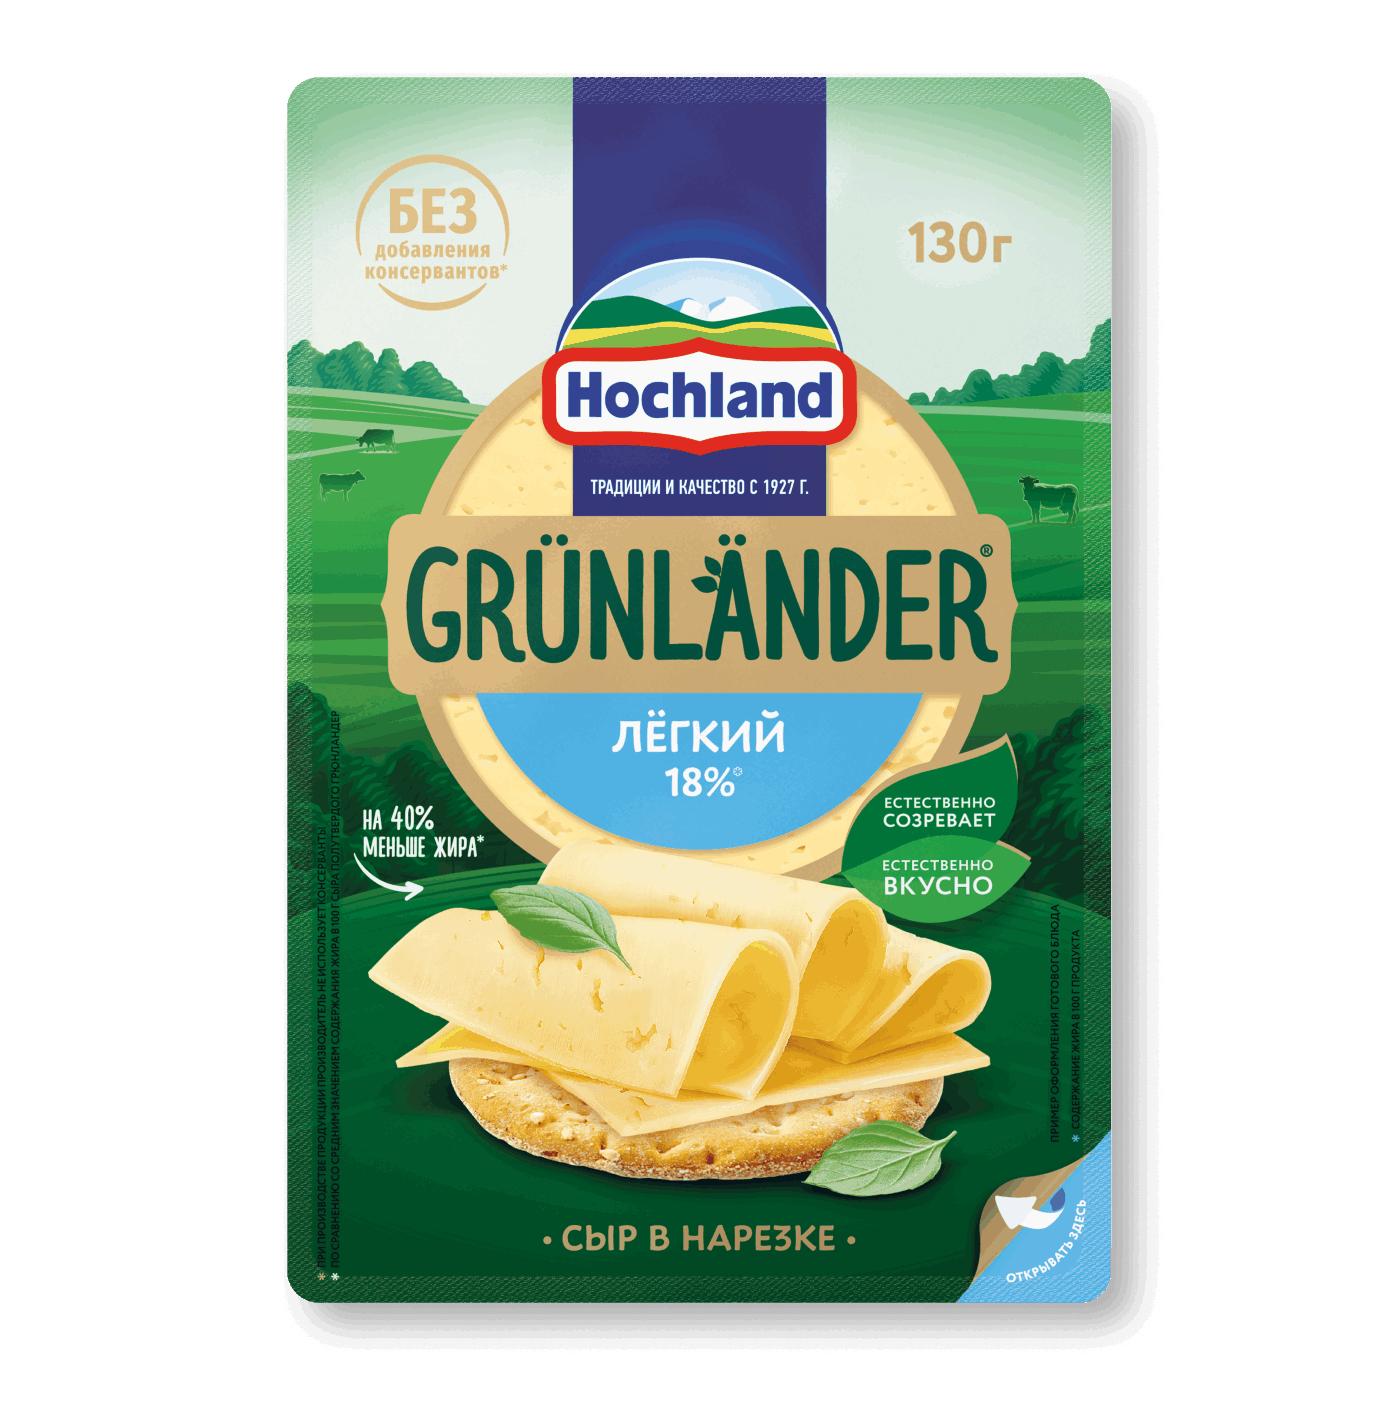 Сыр полутвердый Grunlander, легкий нарезка 130 гр., ПЭТ